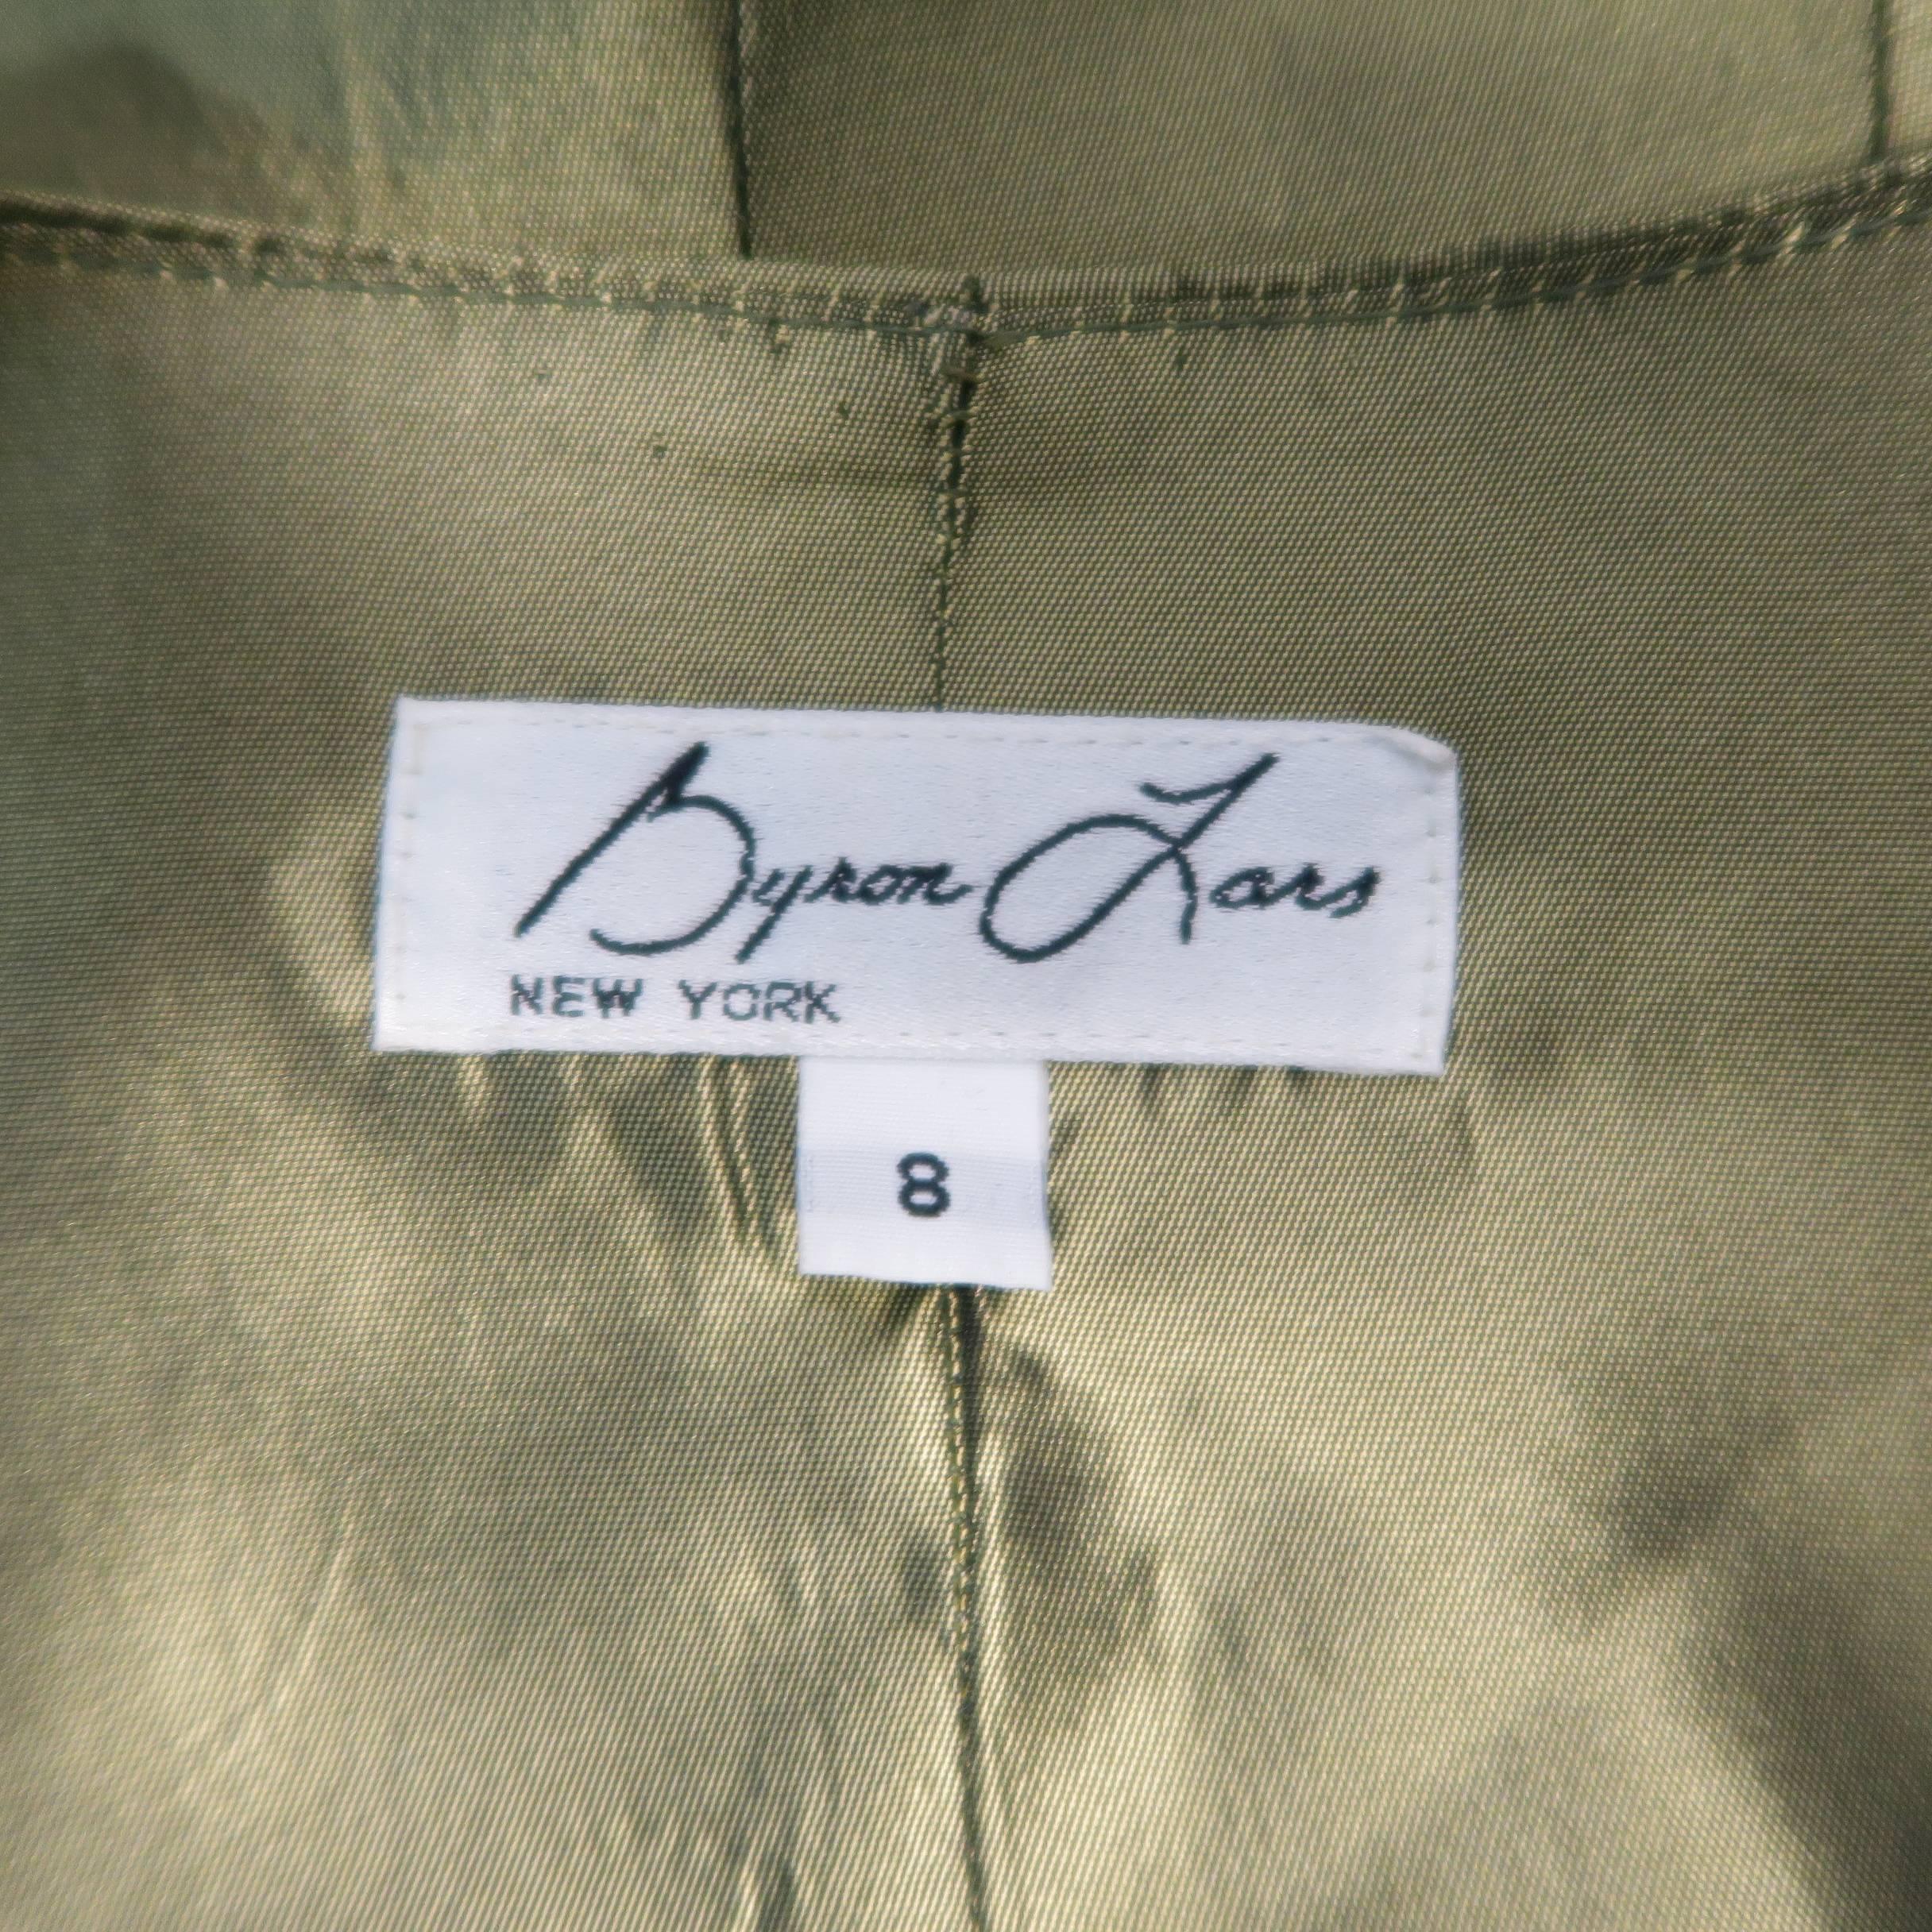 Women's BYRON LARS Size 8 Beige & Olive Green Glenplaid Wool Bustier Vest